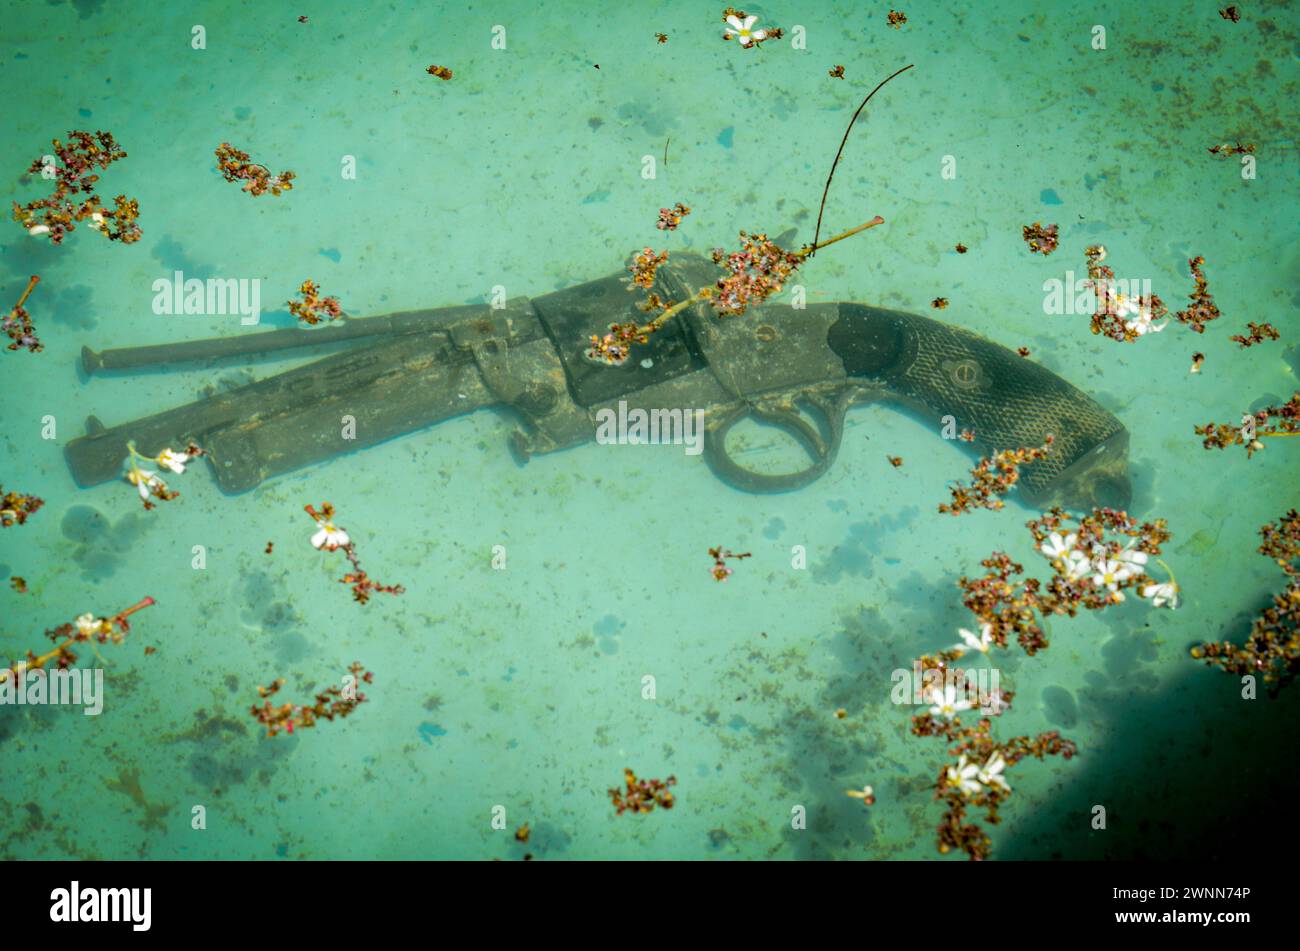 Vecchia pistola anticata immersa in acqua azzurra con piccoli fiori bianchi caduti che poggiano sulla parte superiore. Foto Stock